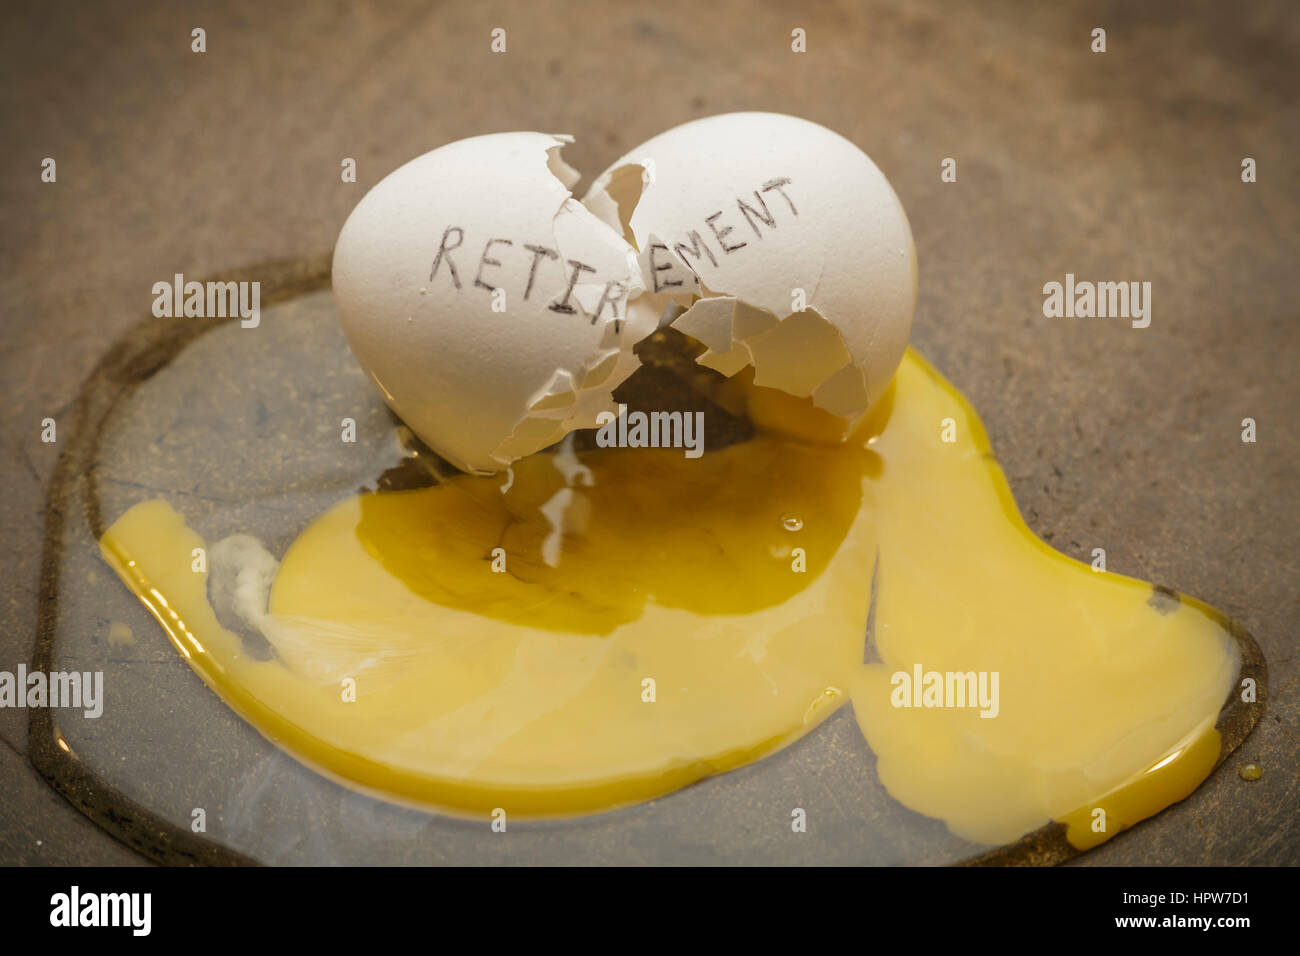 retirement broken nest egg concept Stock Photo